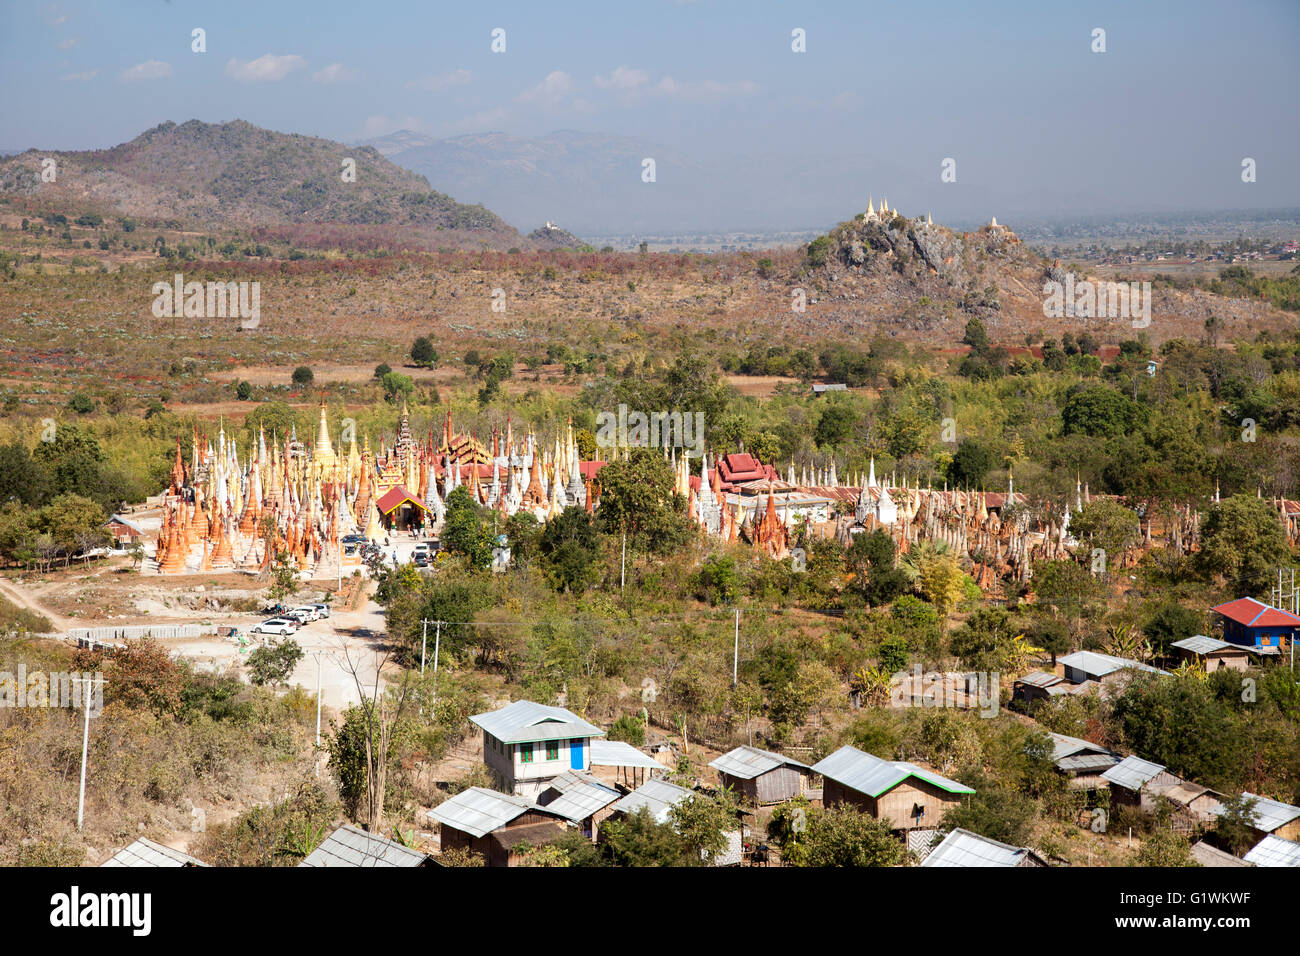 Le village de Inthein au sud ouest de l'Inle Lake avec sa masse de fait de pagodes (Myanmar). Inthein, près du lac Inlé. Banque D'Images